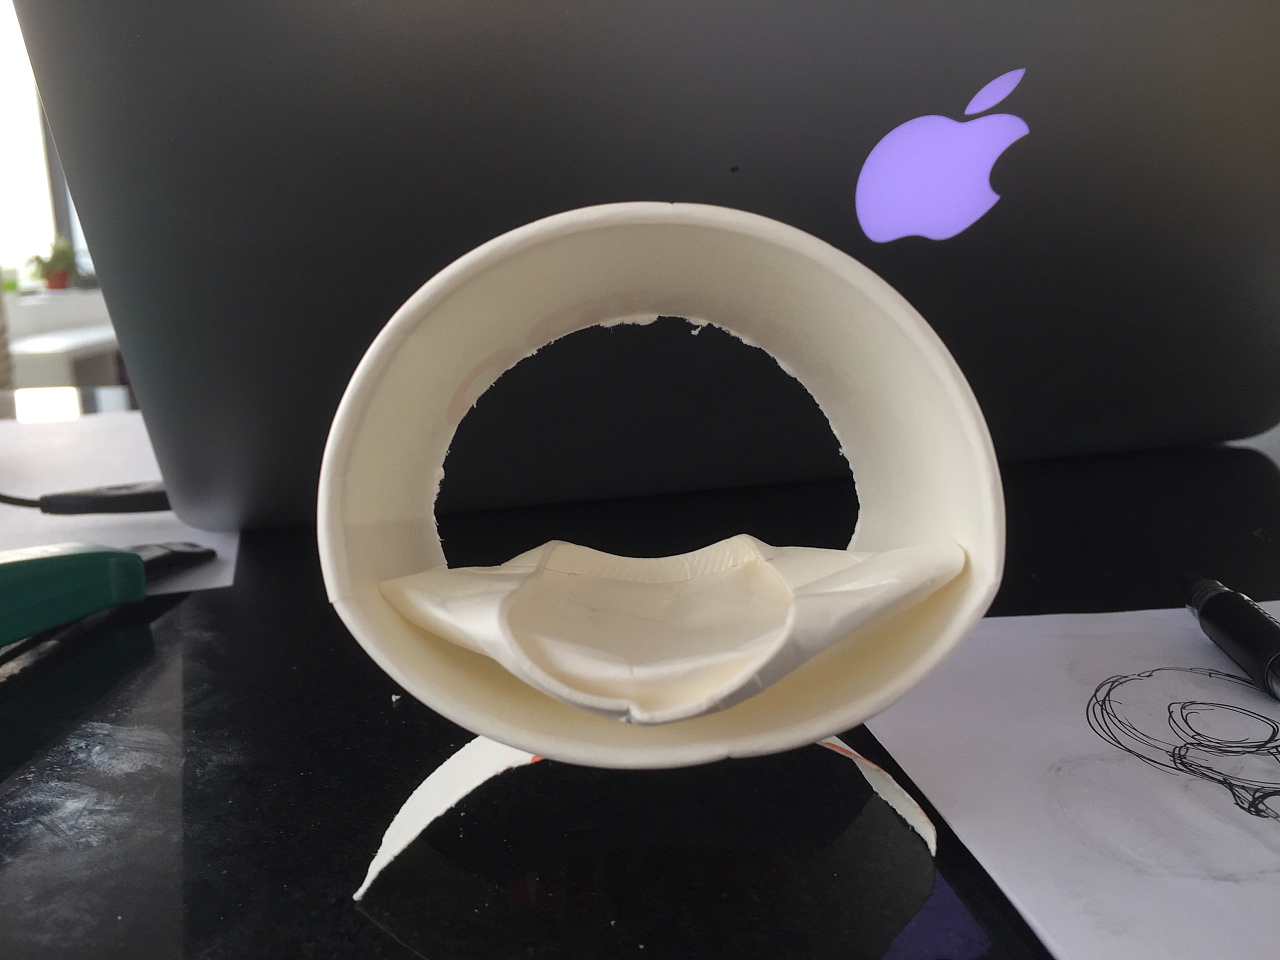 拿纸杯做了个简易模型，恩，有点贝壳椅的样子看着可能会舒服点。